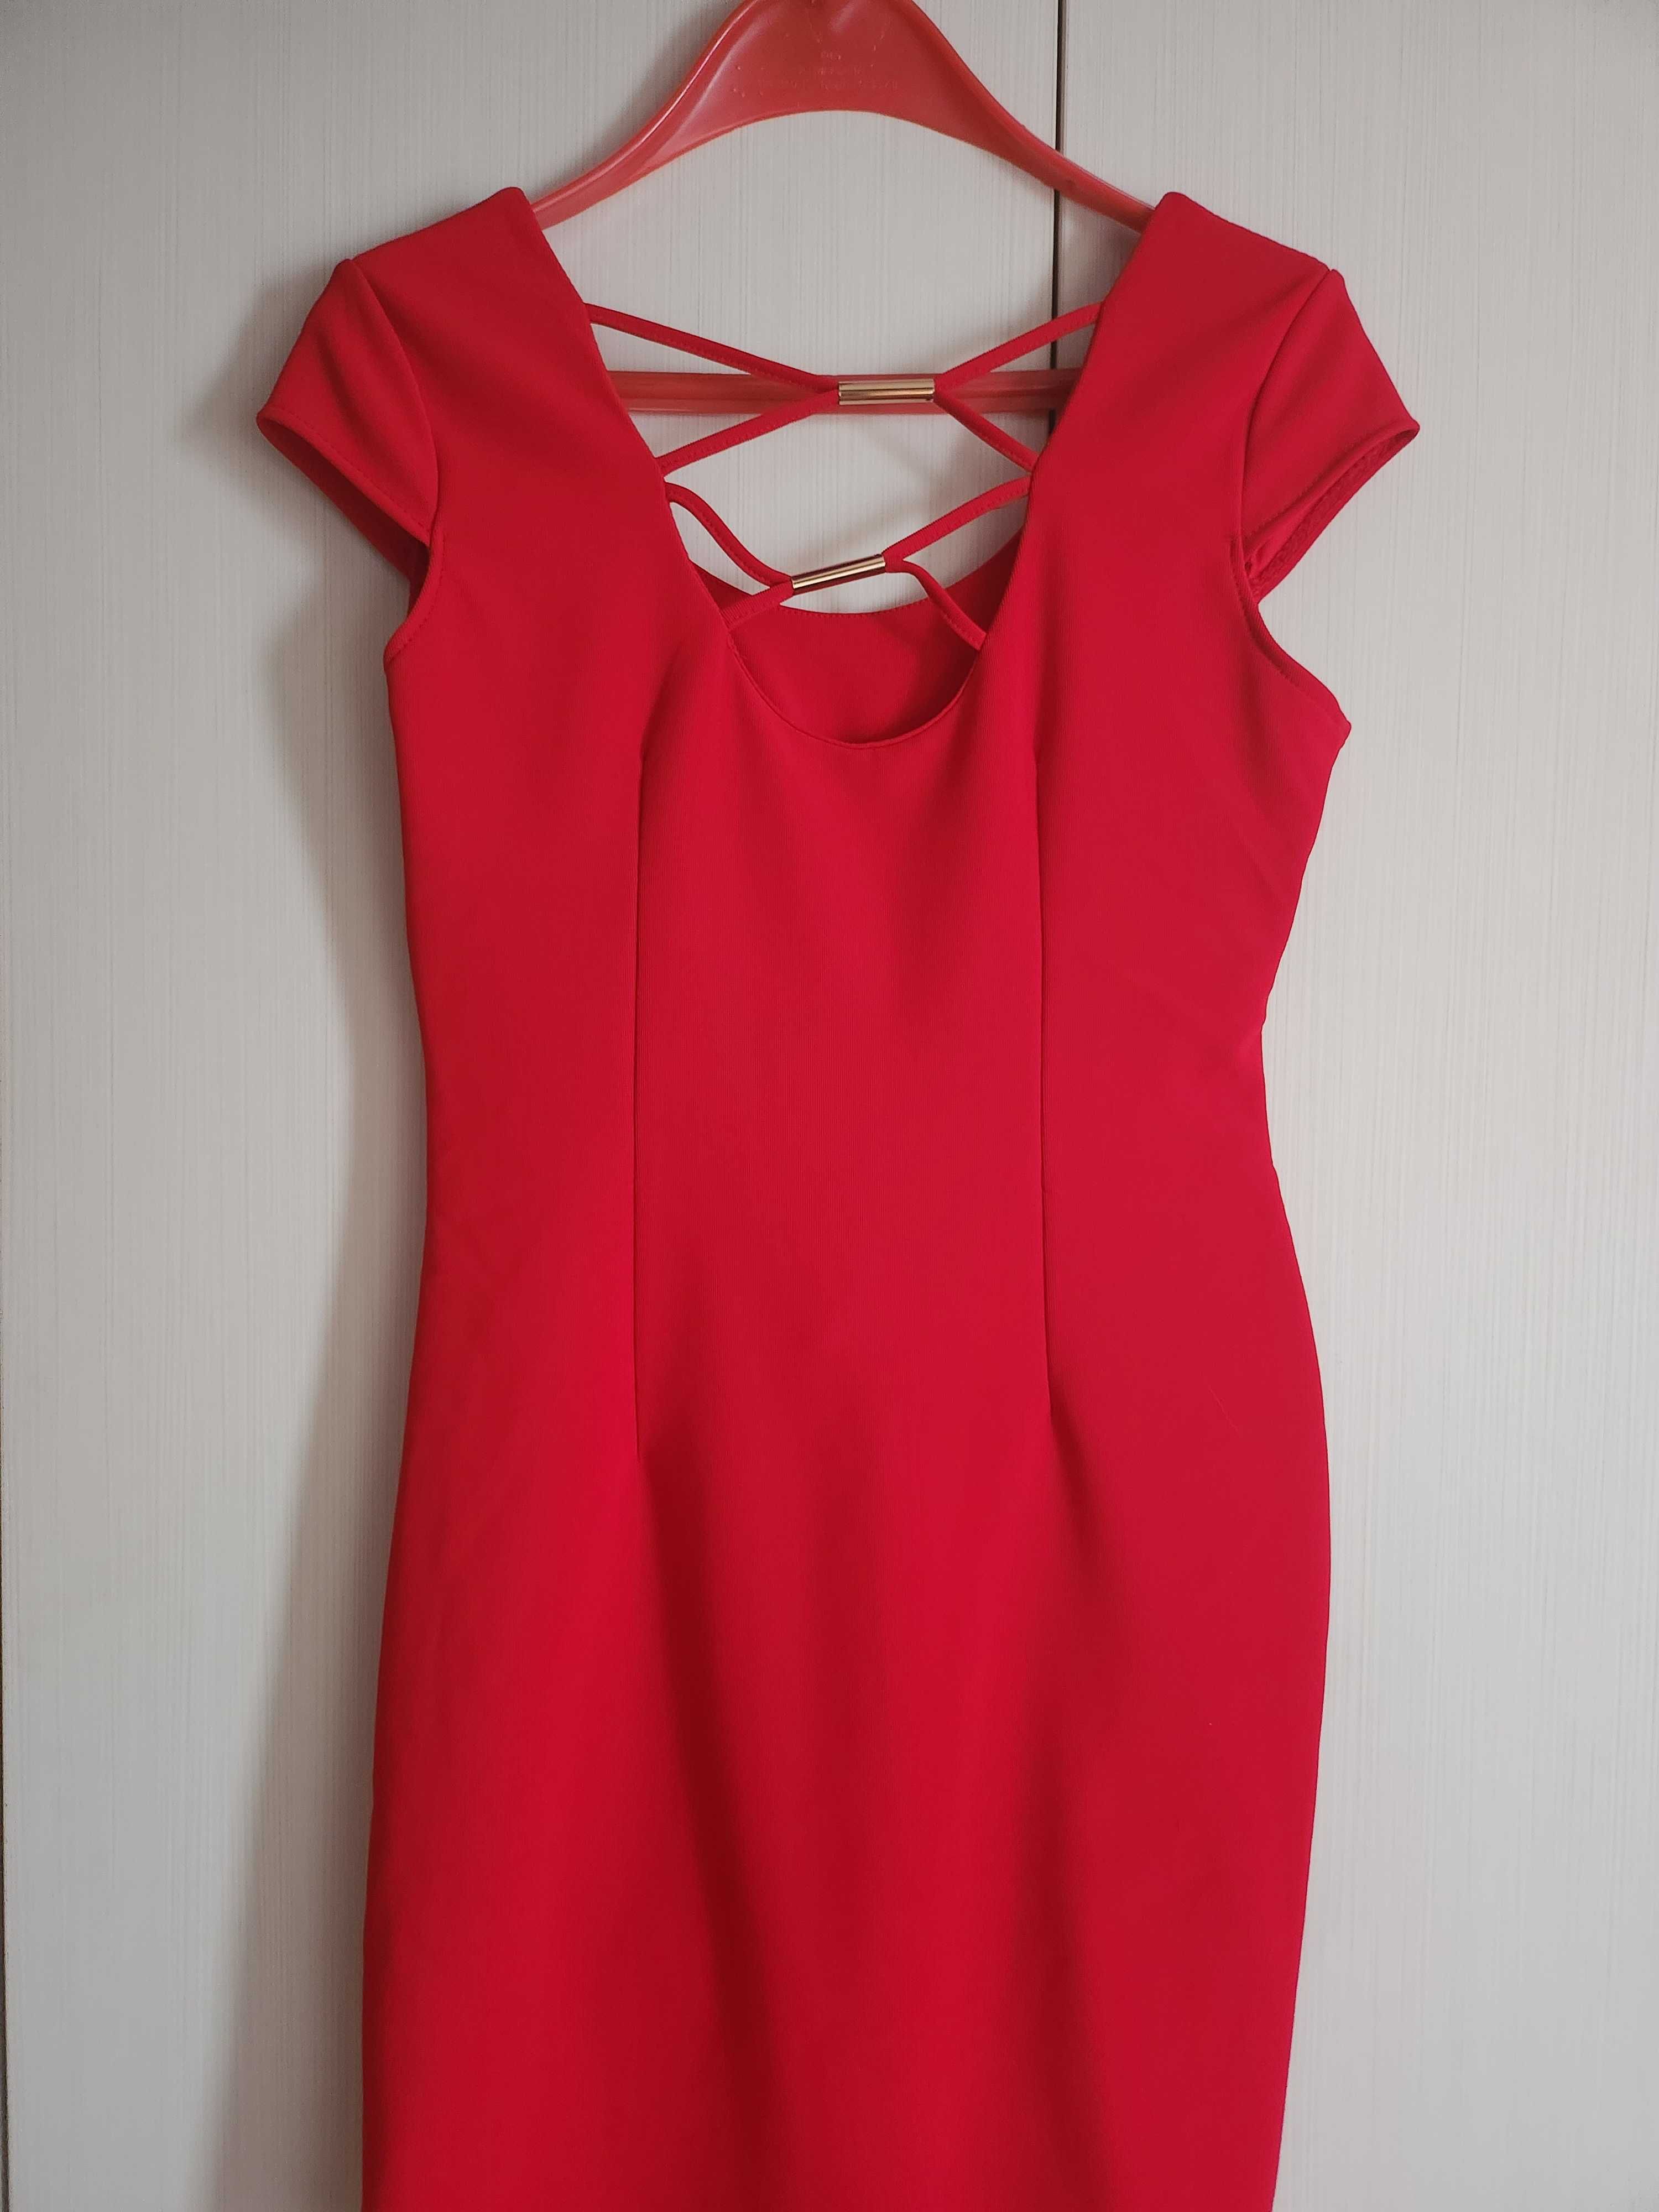 Дамска червена рокля